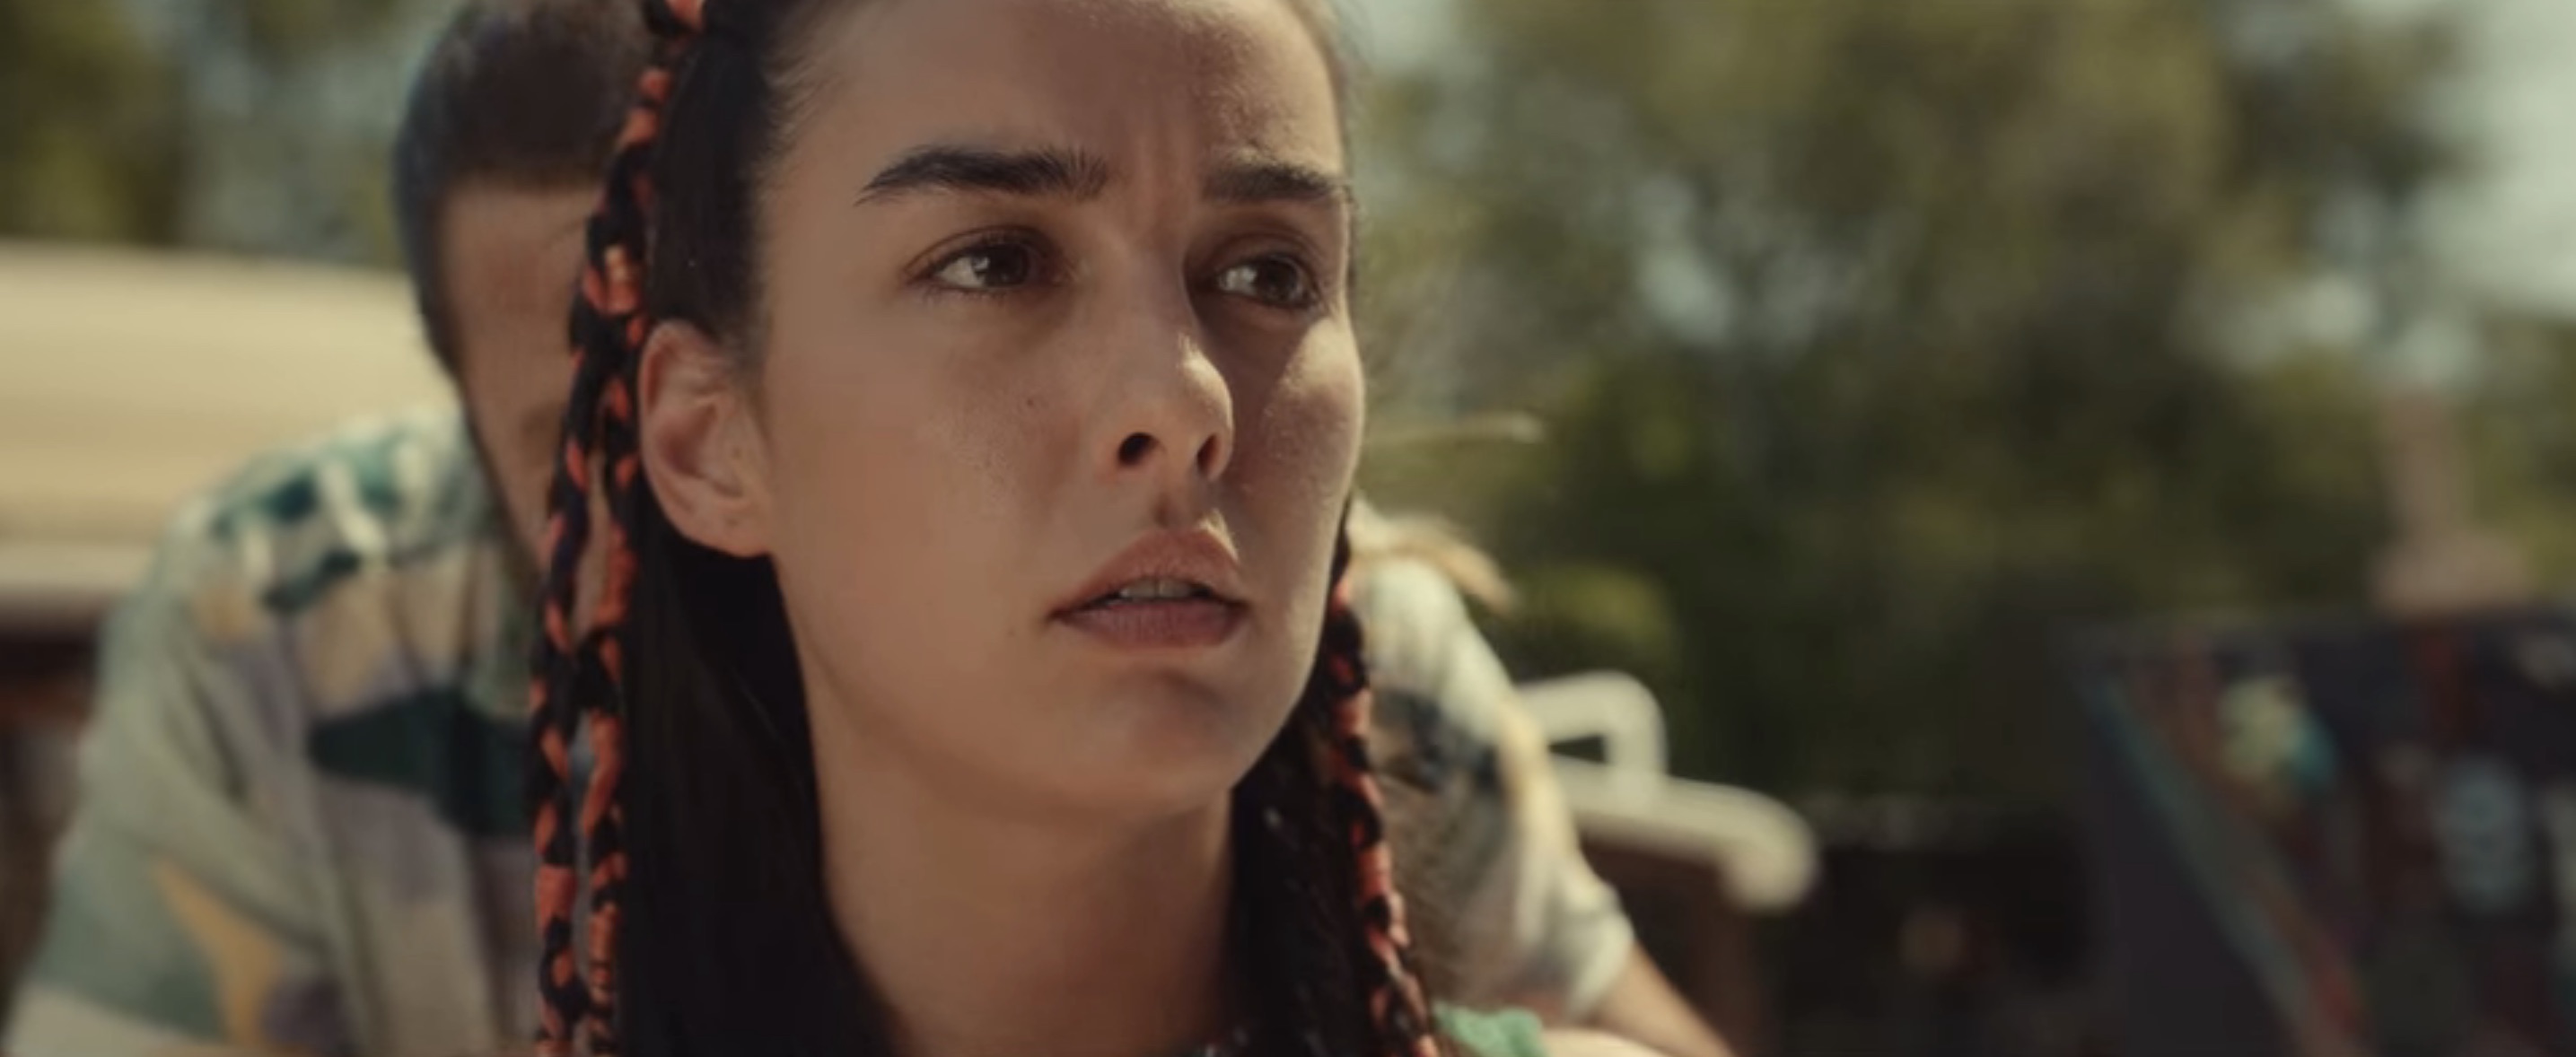 Godspeed Cast on Netflix - Oyku Naz Altay as Elif